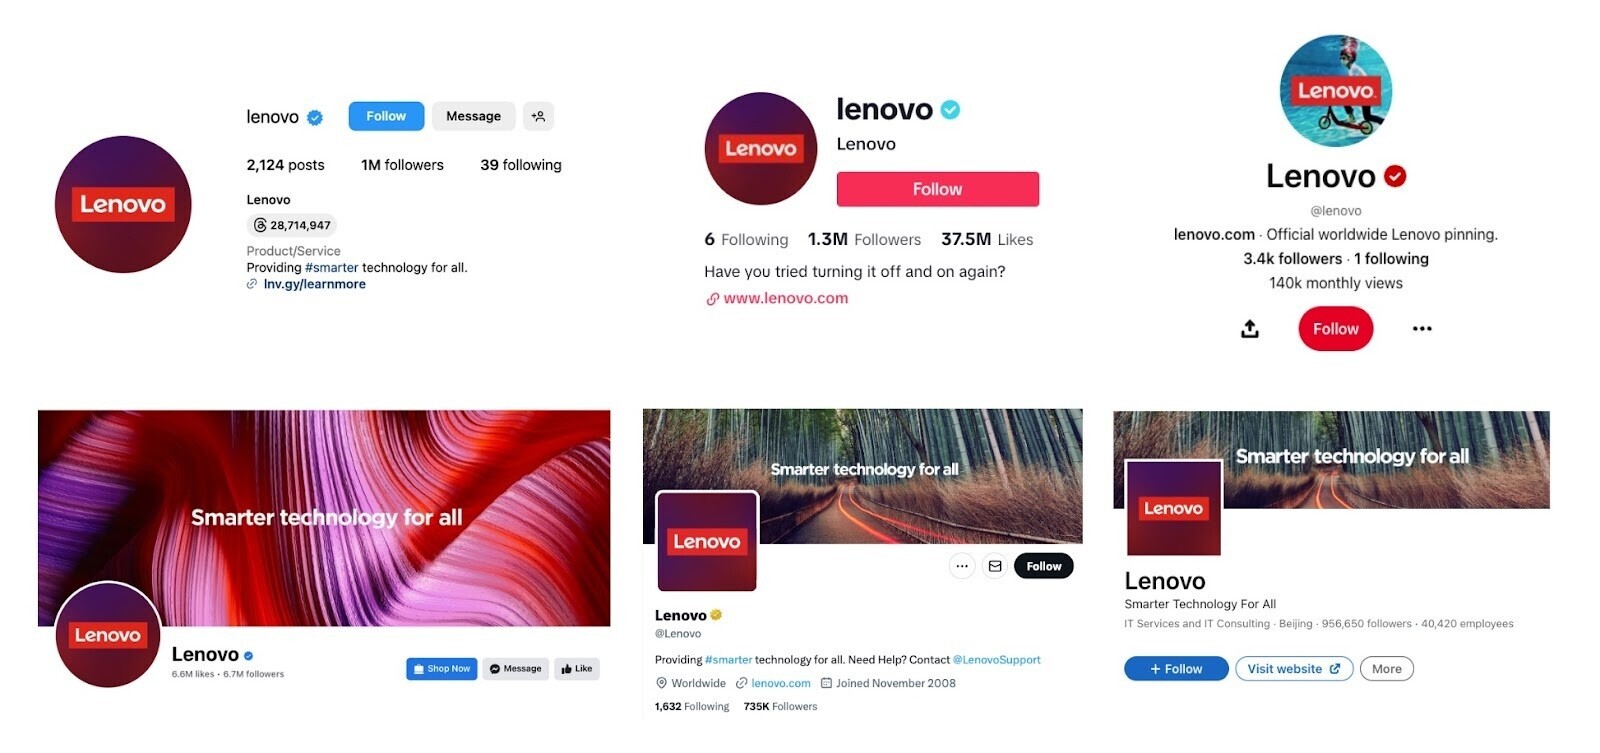 Lenovo social media accounts